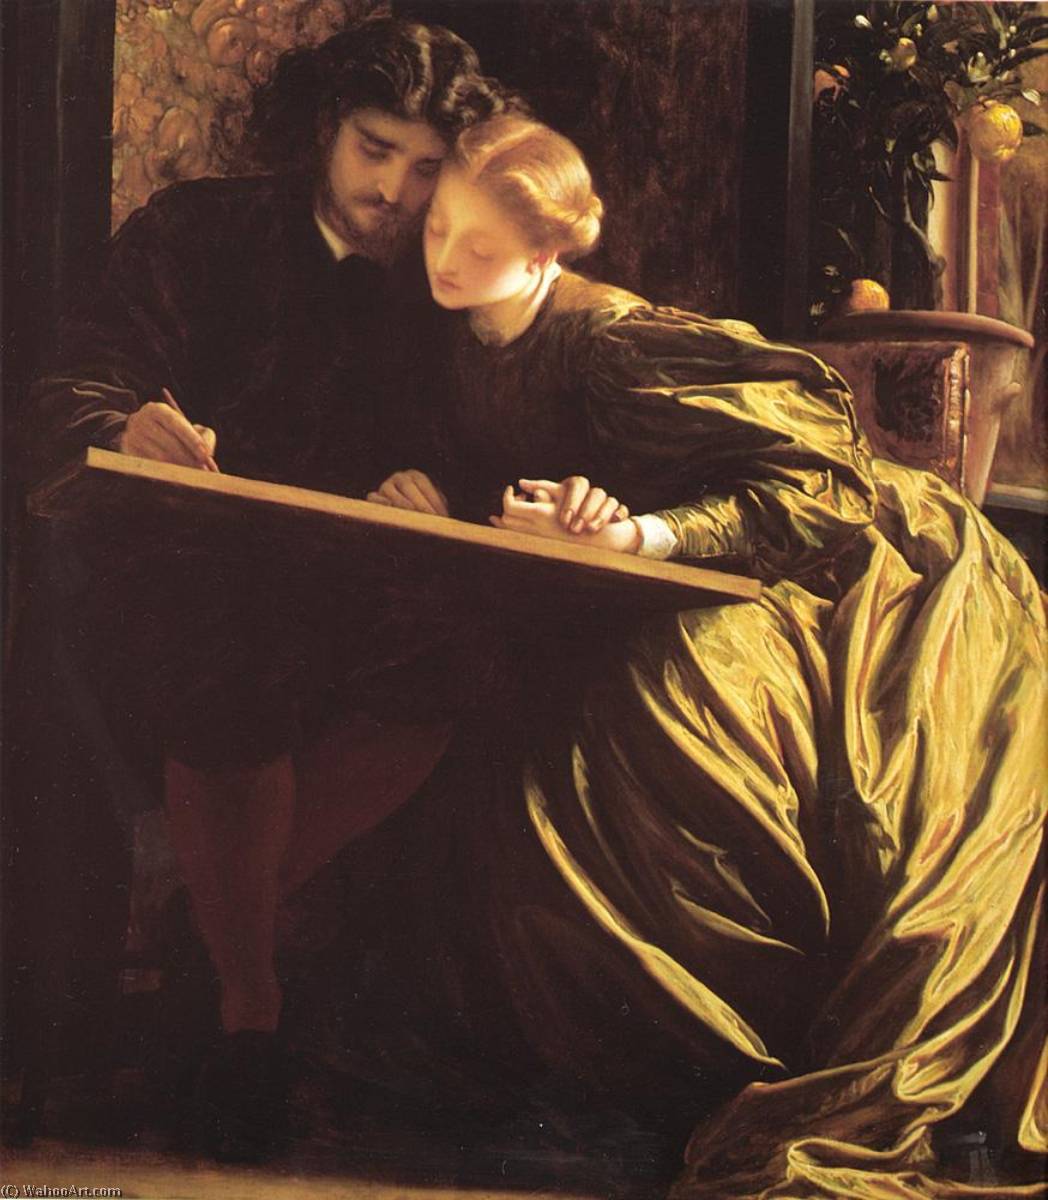 WikiOO.org - אנציקלופדיה לאמנויות יפות - ציור, יצירות אמנות Lord Frederic Leighton - The Painter's Honeymoon